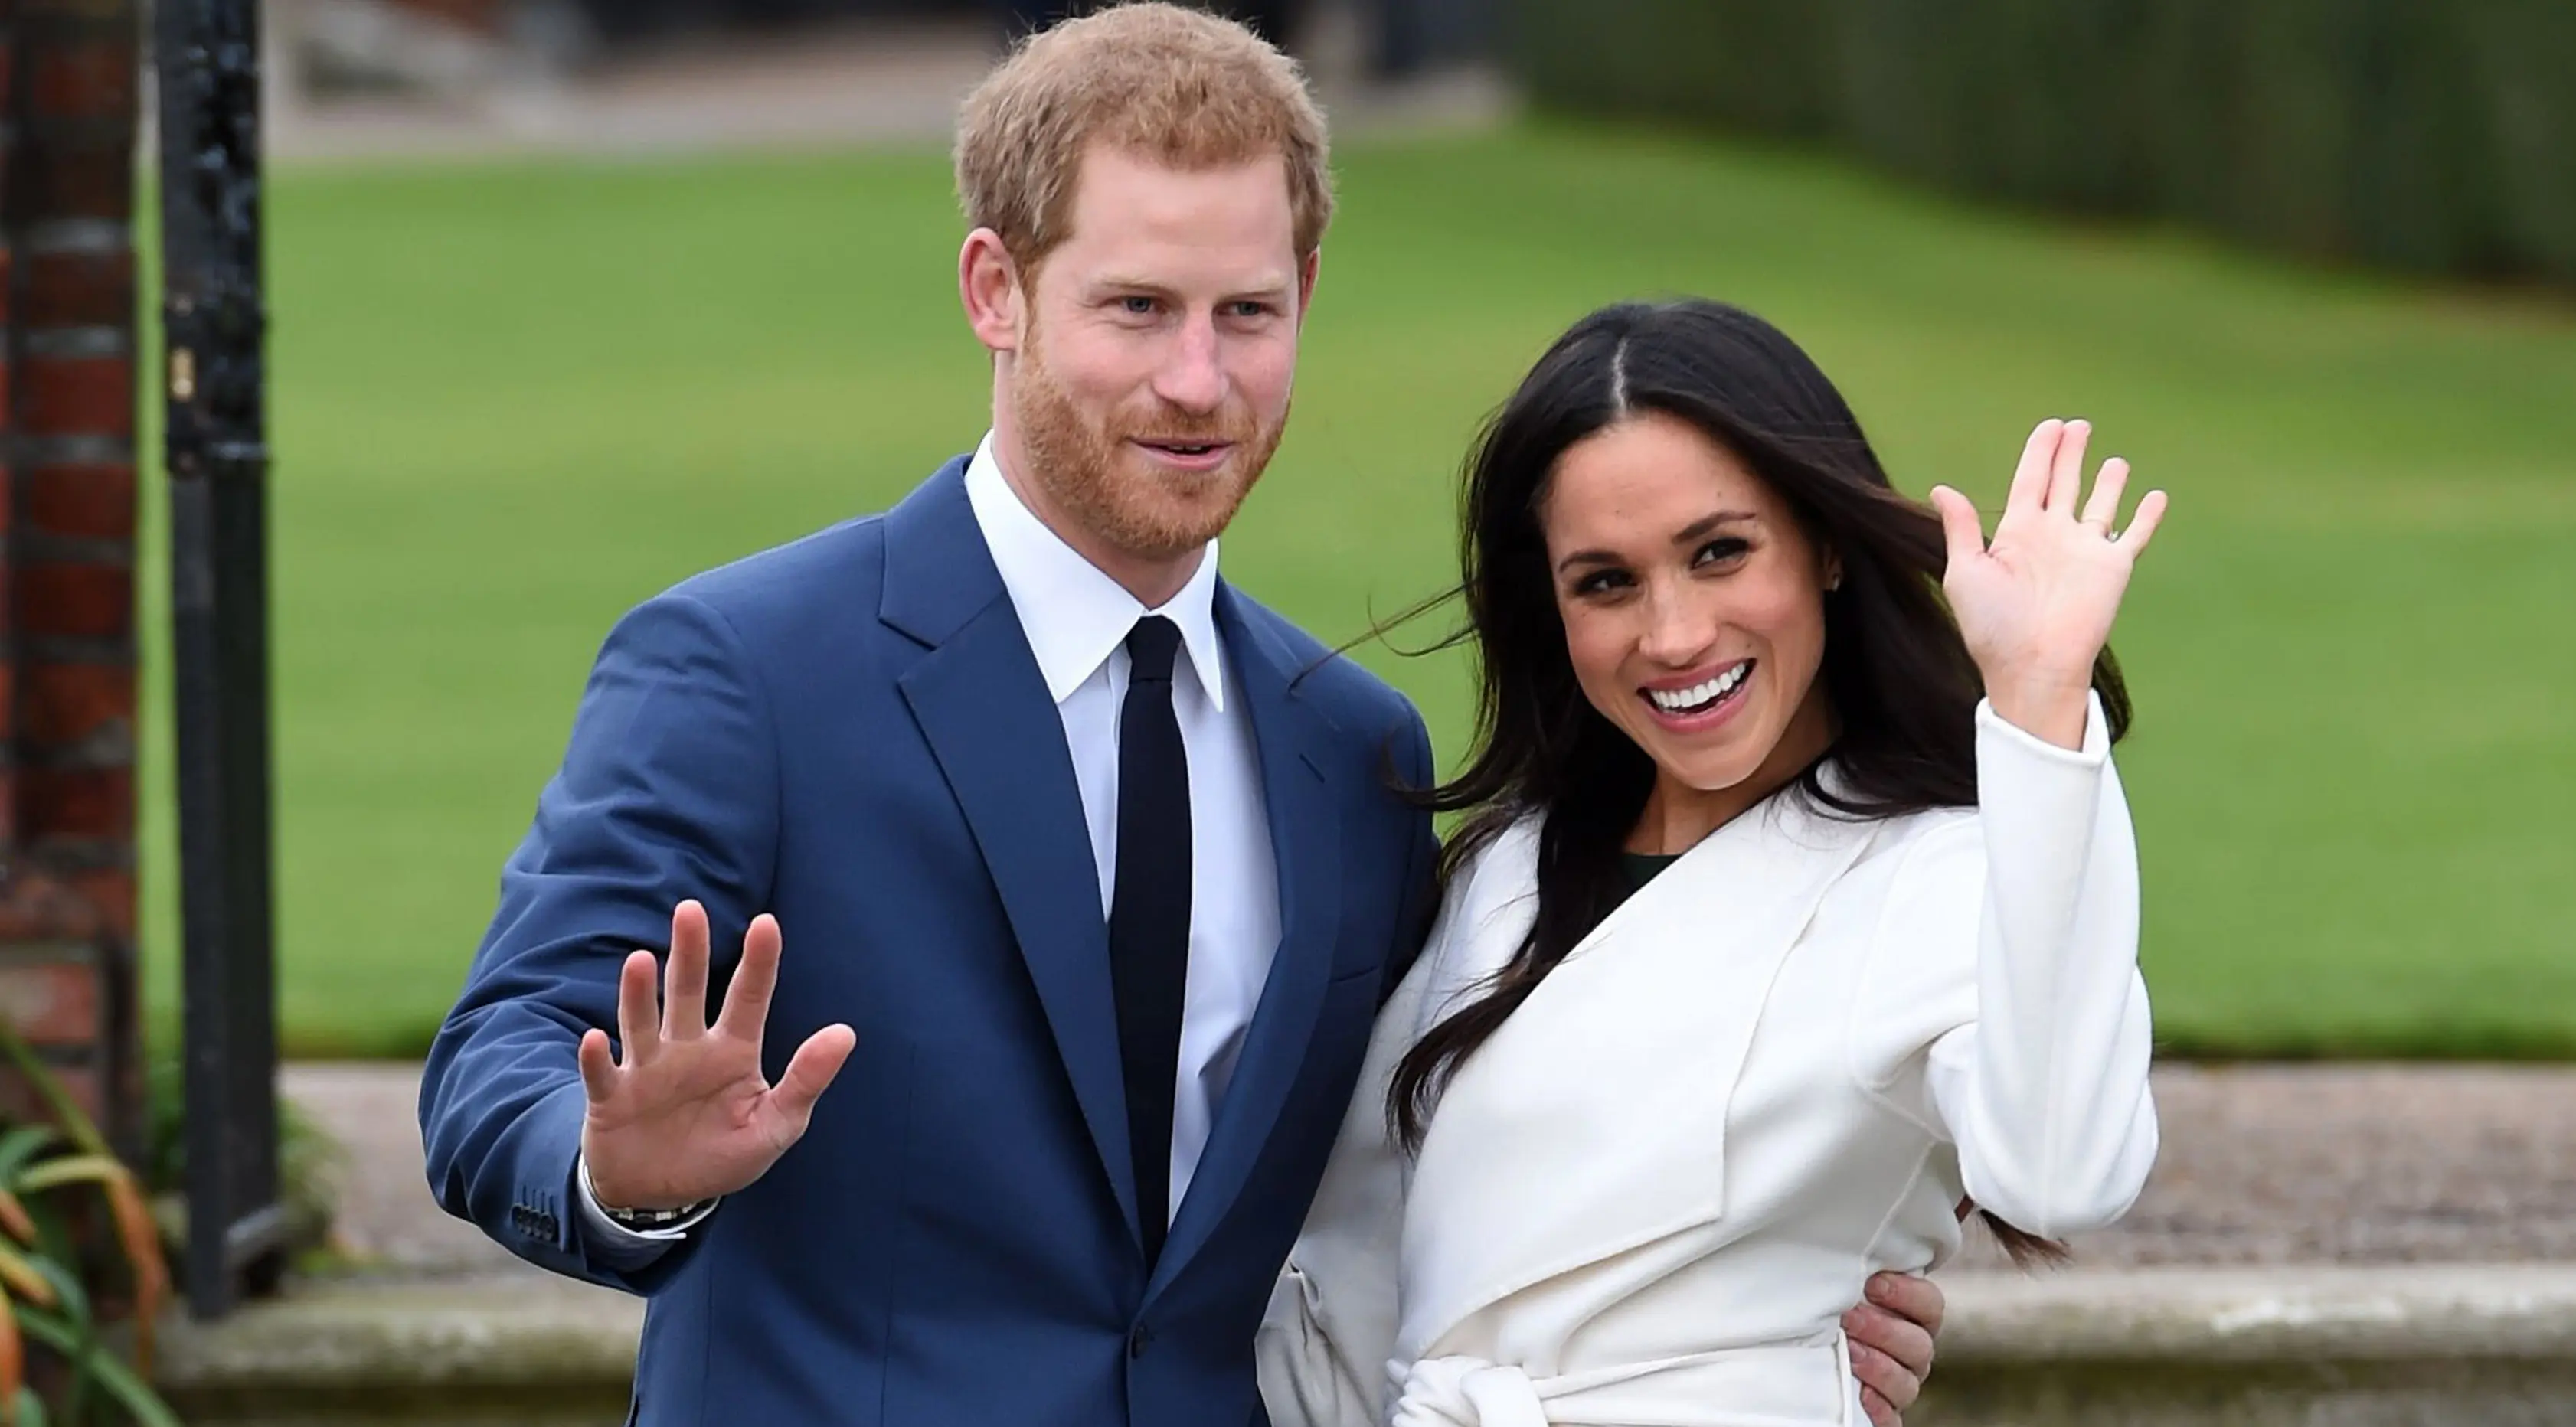 Pangeran Harry dan aktris AS, Meghan Markle berpose untuk media saat mengumumkan pertunangan mereka di Kensington Palace, London, Senin (27/11). Pangeran Harry dan Meghan Markle akan menikah pada musim semi 2018 mendatang. (Eddie Mulholland/Pool via AP)